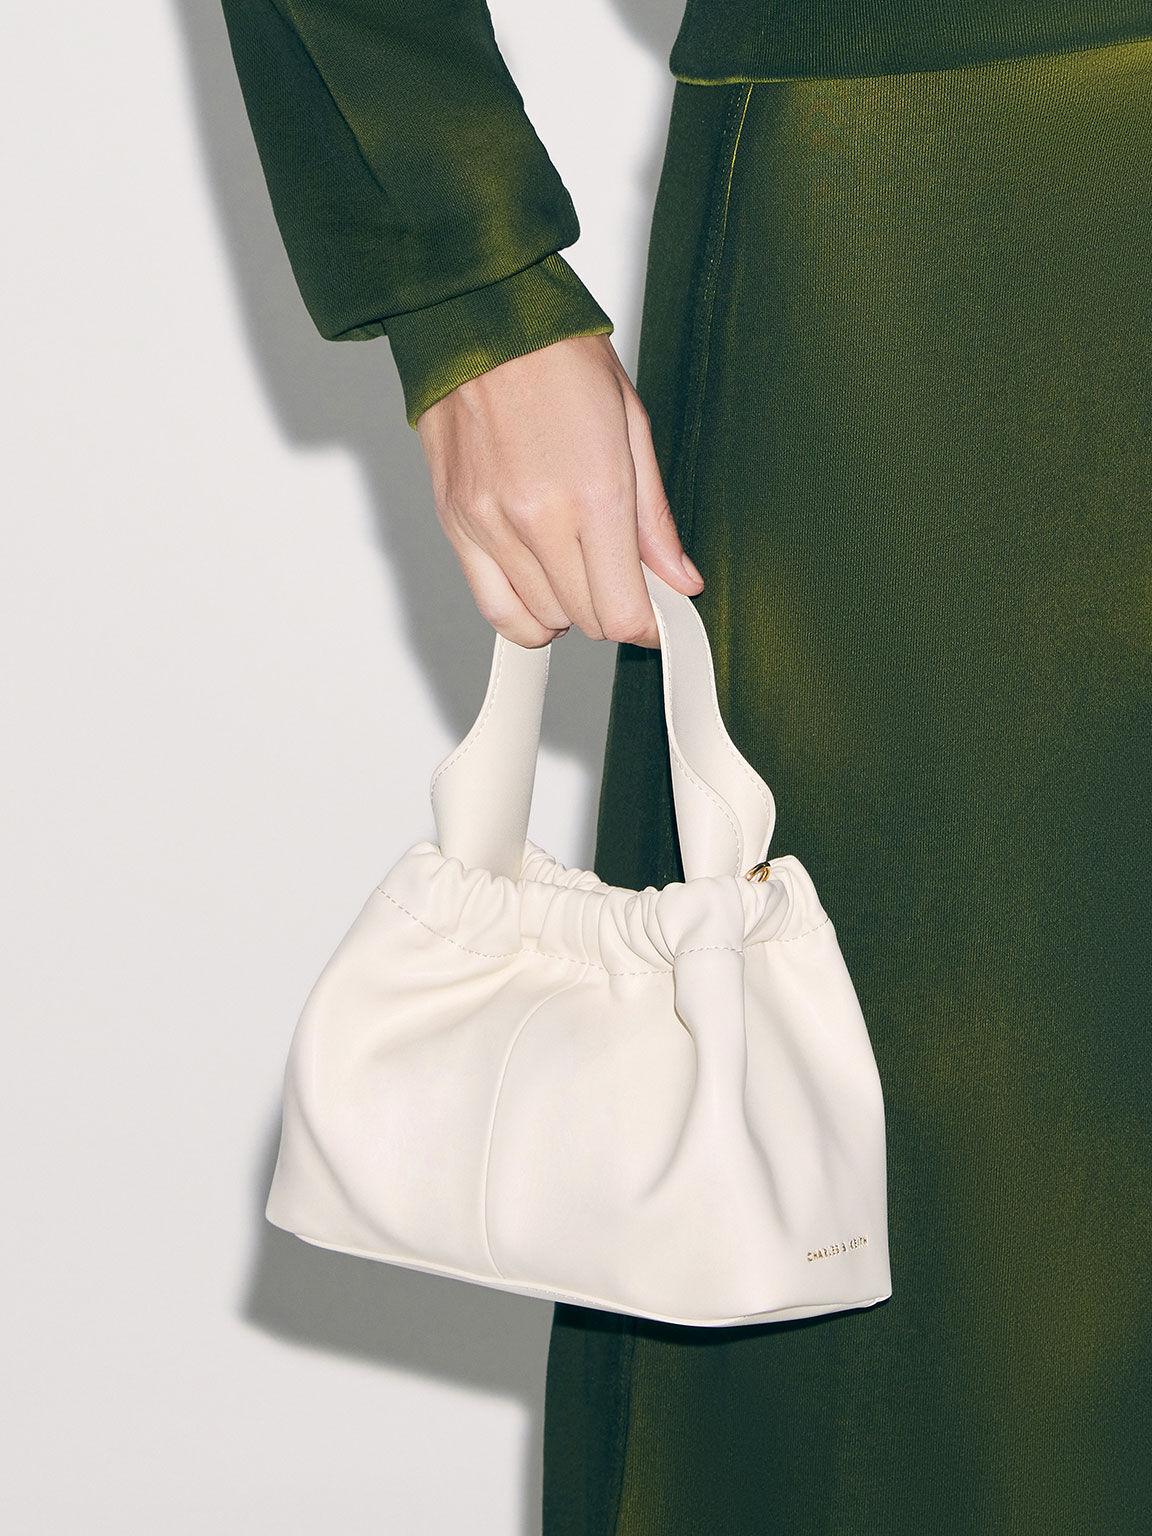 Tote bag, shoulder bag, niche design, knit bag, large capacity Tote bag,  fashionable and versatile handbag, suitable for women